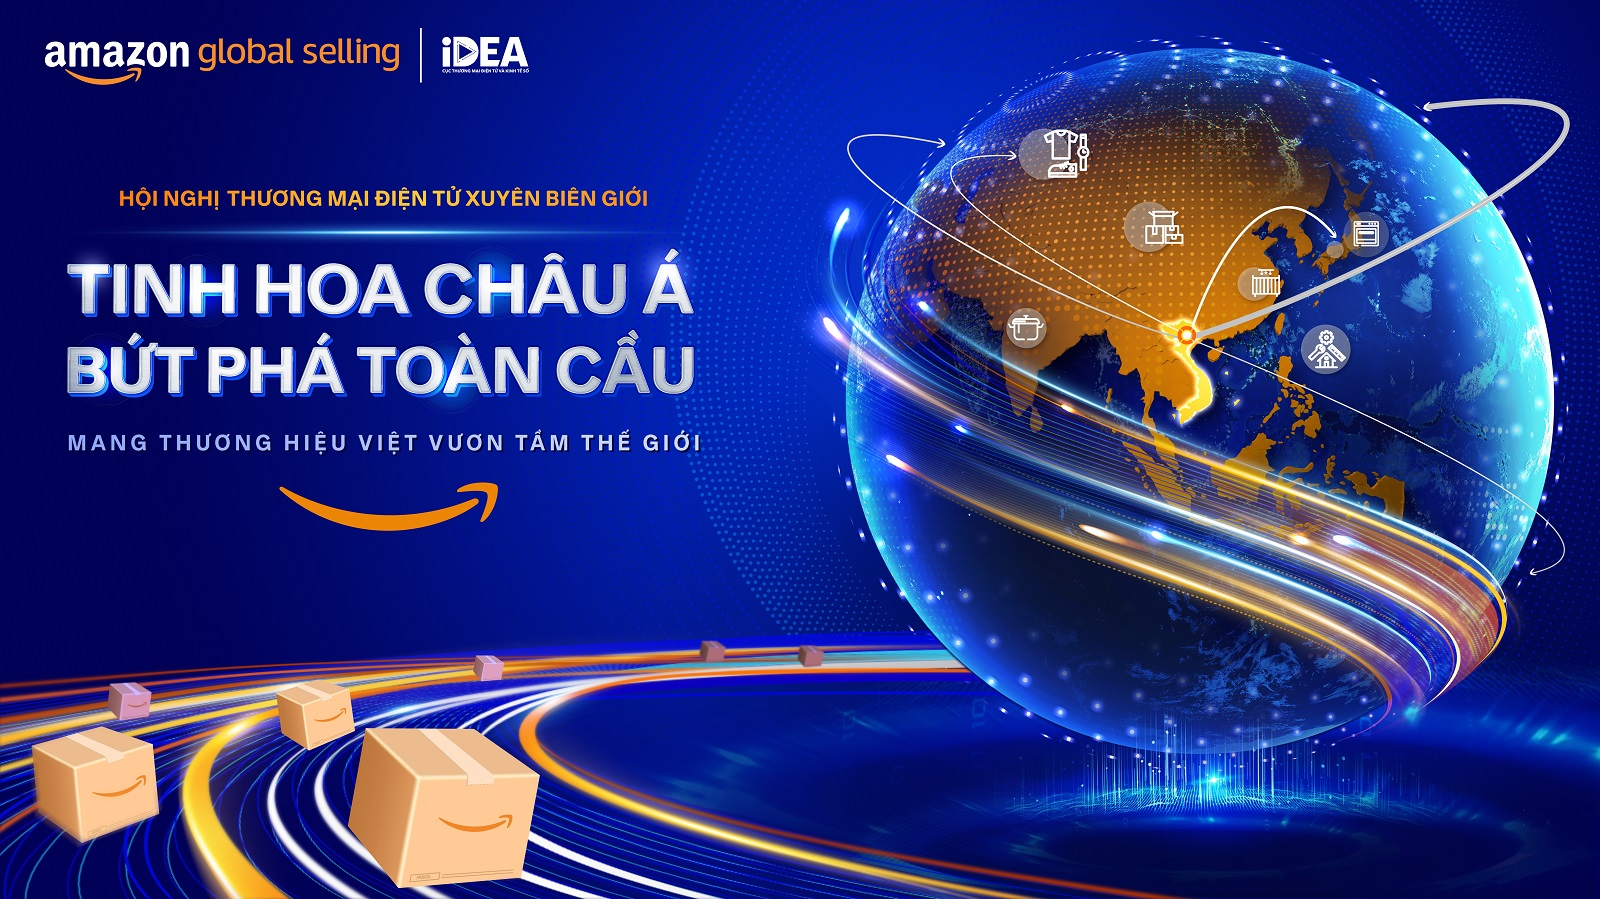 Sắp diễn ra Hội nghị Thương mại Điện tử xuyên biên giới tại Việt Nam với chủ đề “Tinh hoa Châu Á, Bứt phá toàn cầu”